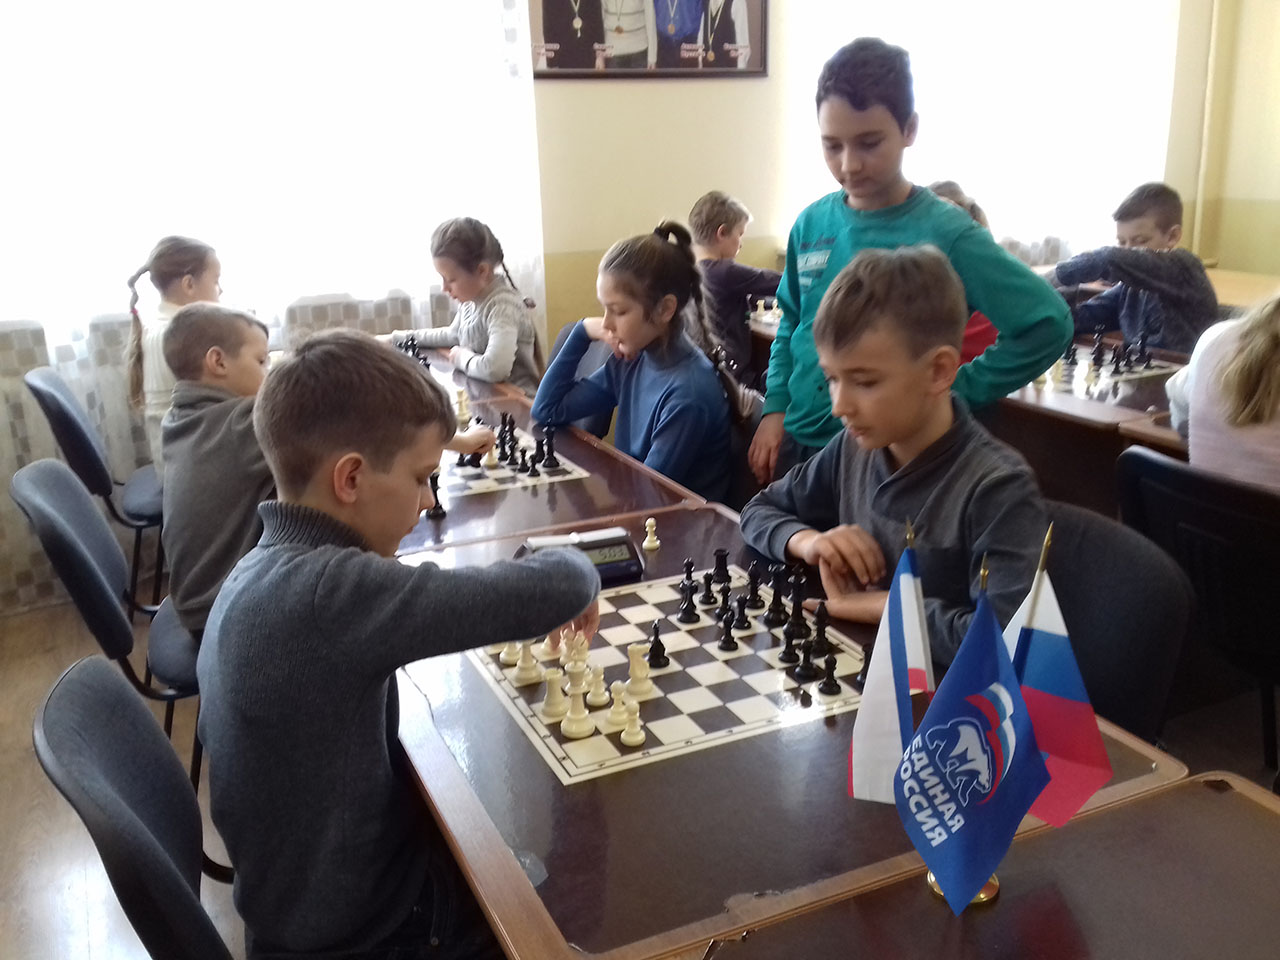 юные шахматисты